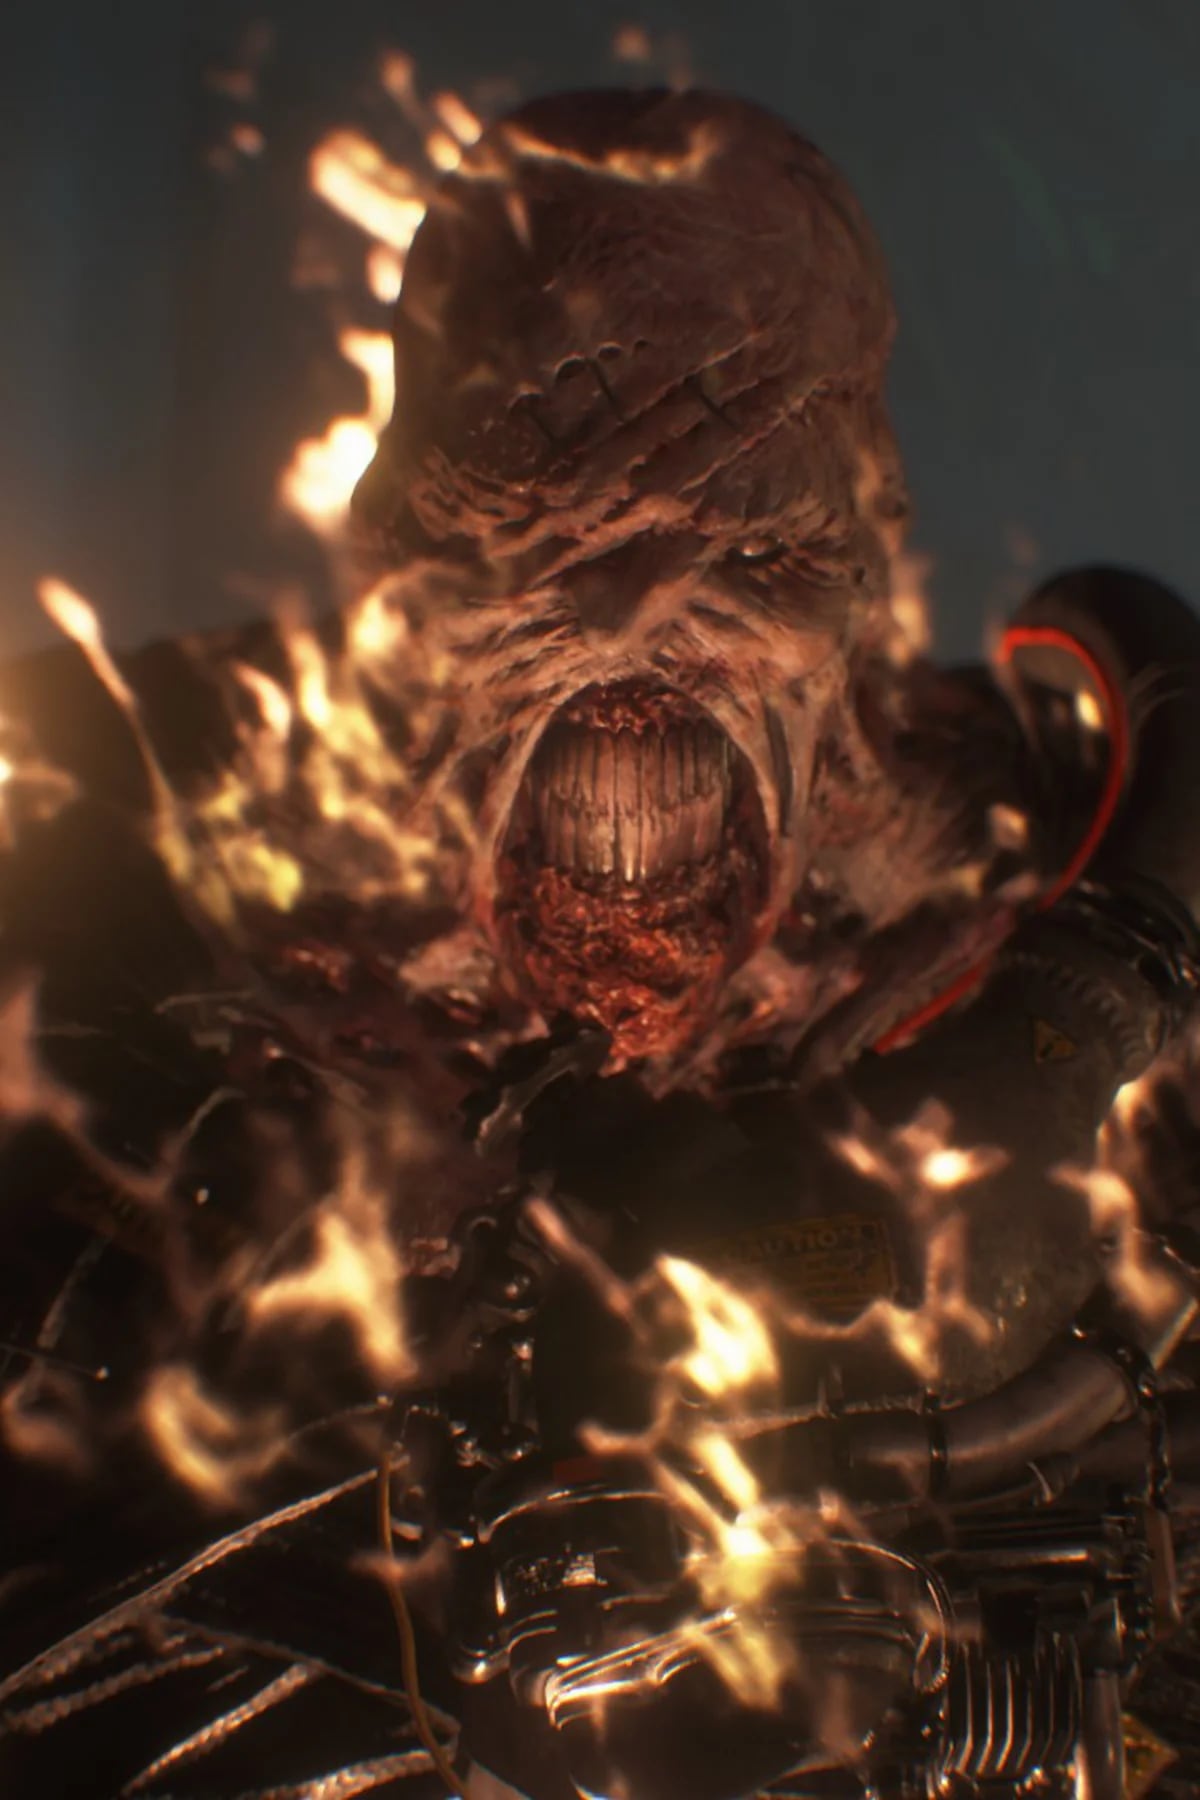 Xbox Game Pass anuncia sus primeros juegos de febrero: Resident Evil 3  Remake es uno de ellos